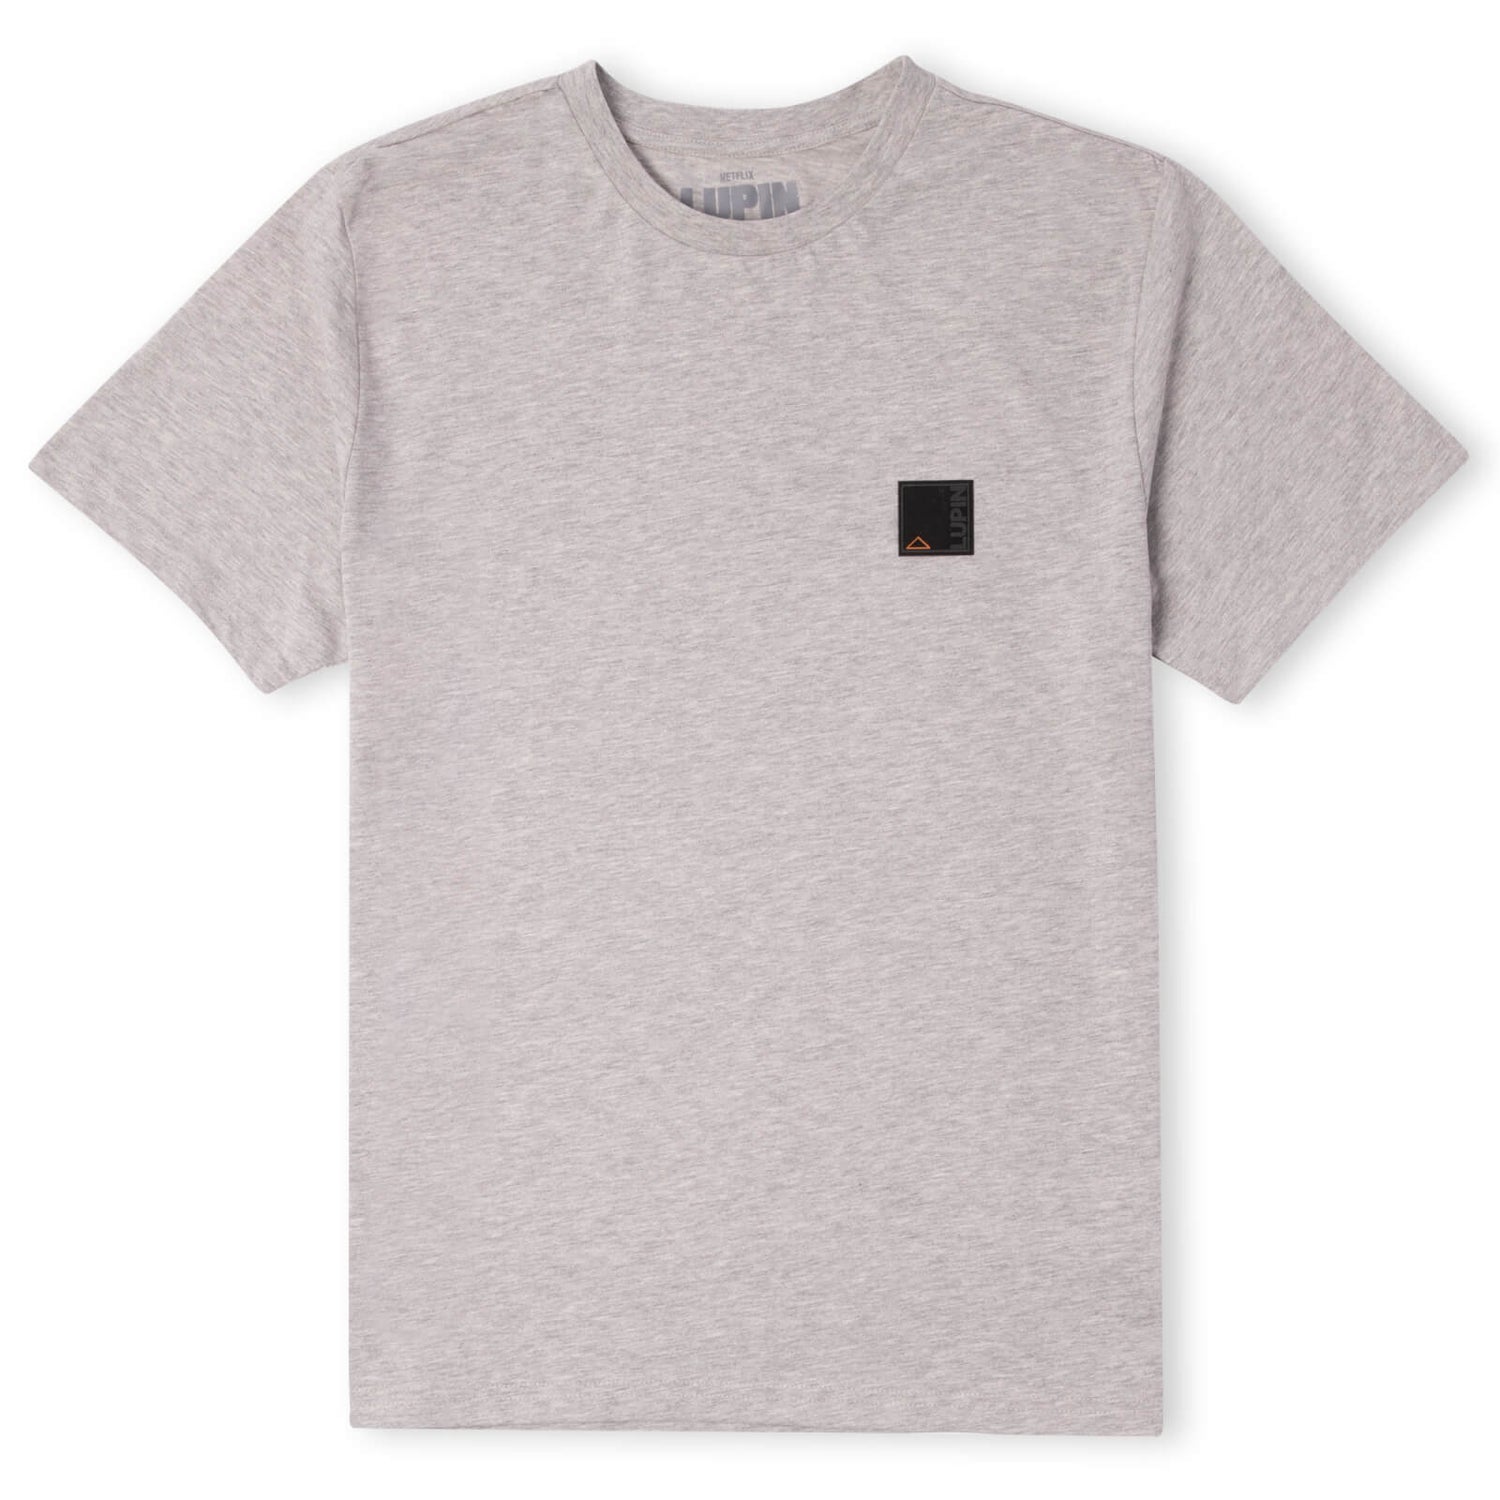 Lupin Multi Slogan Unisex T-Shirt - Grey